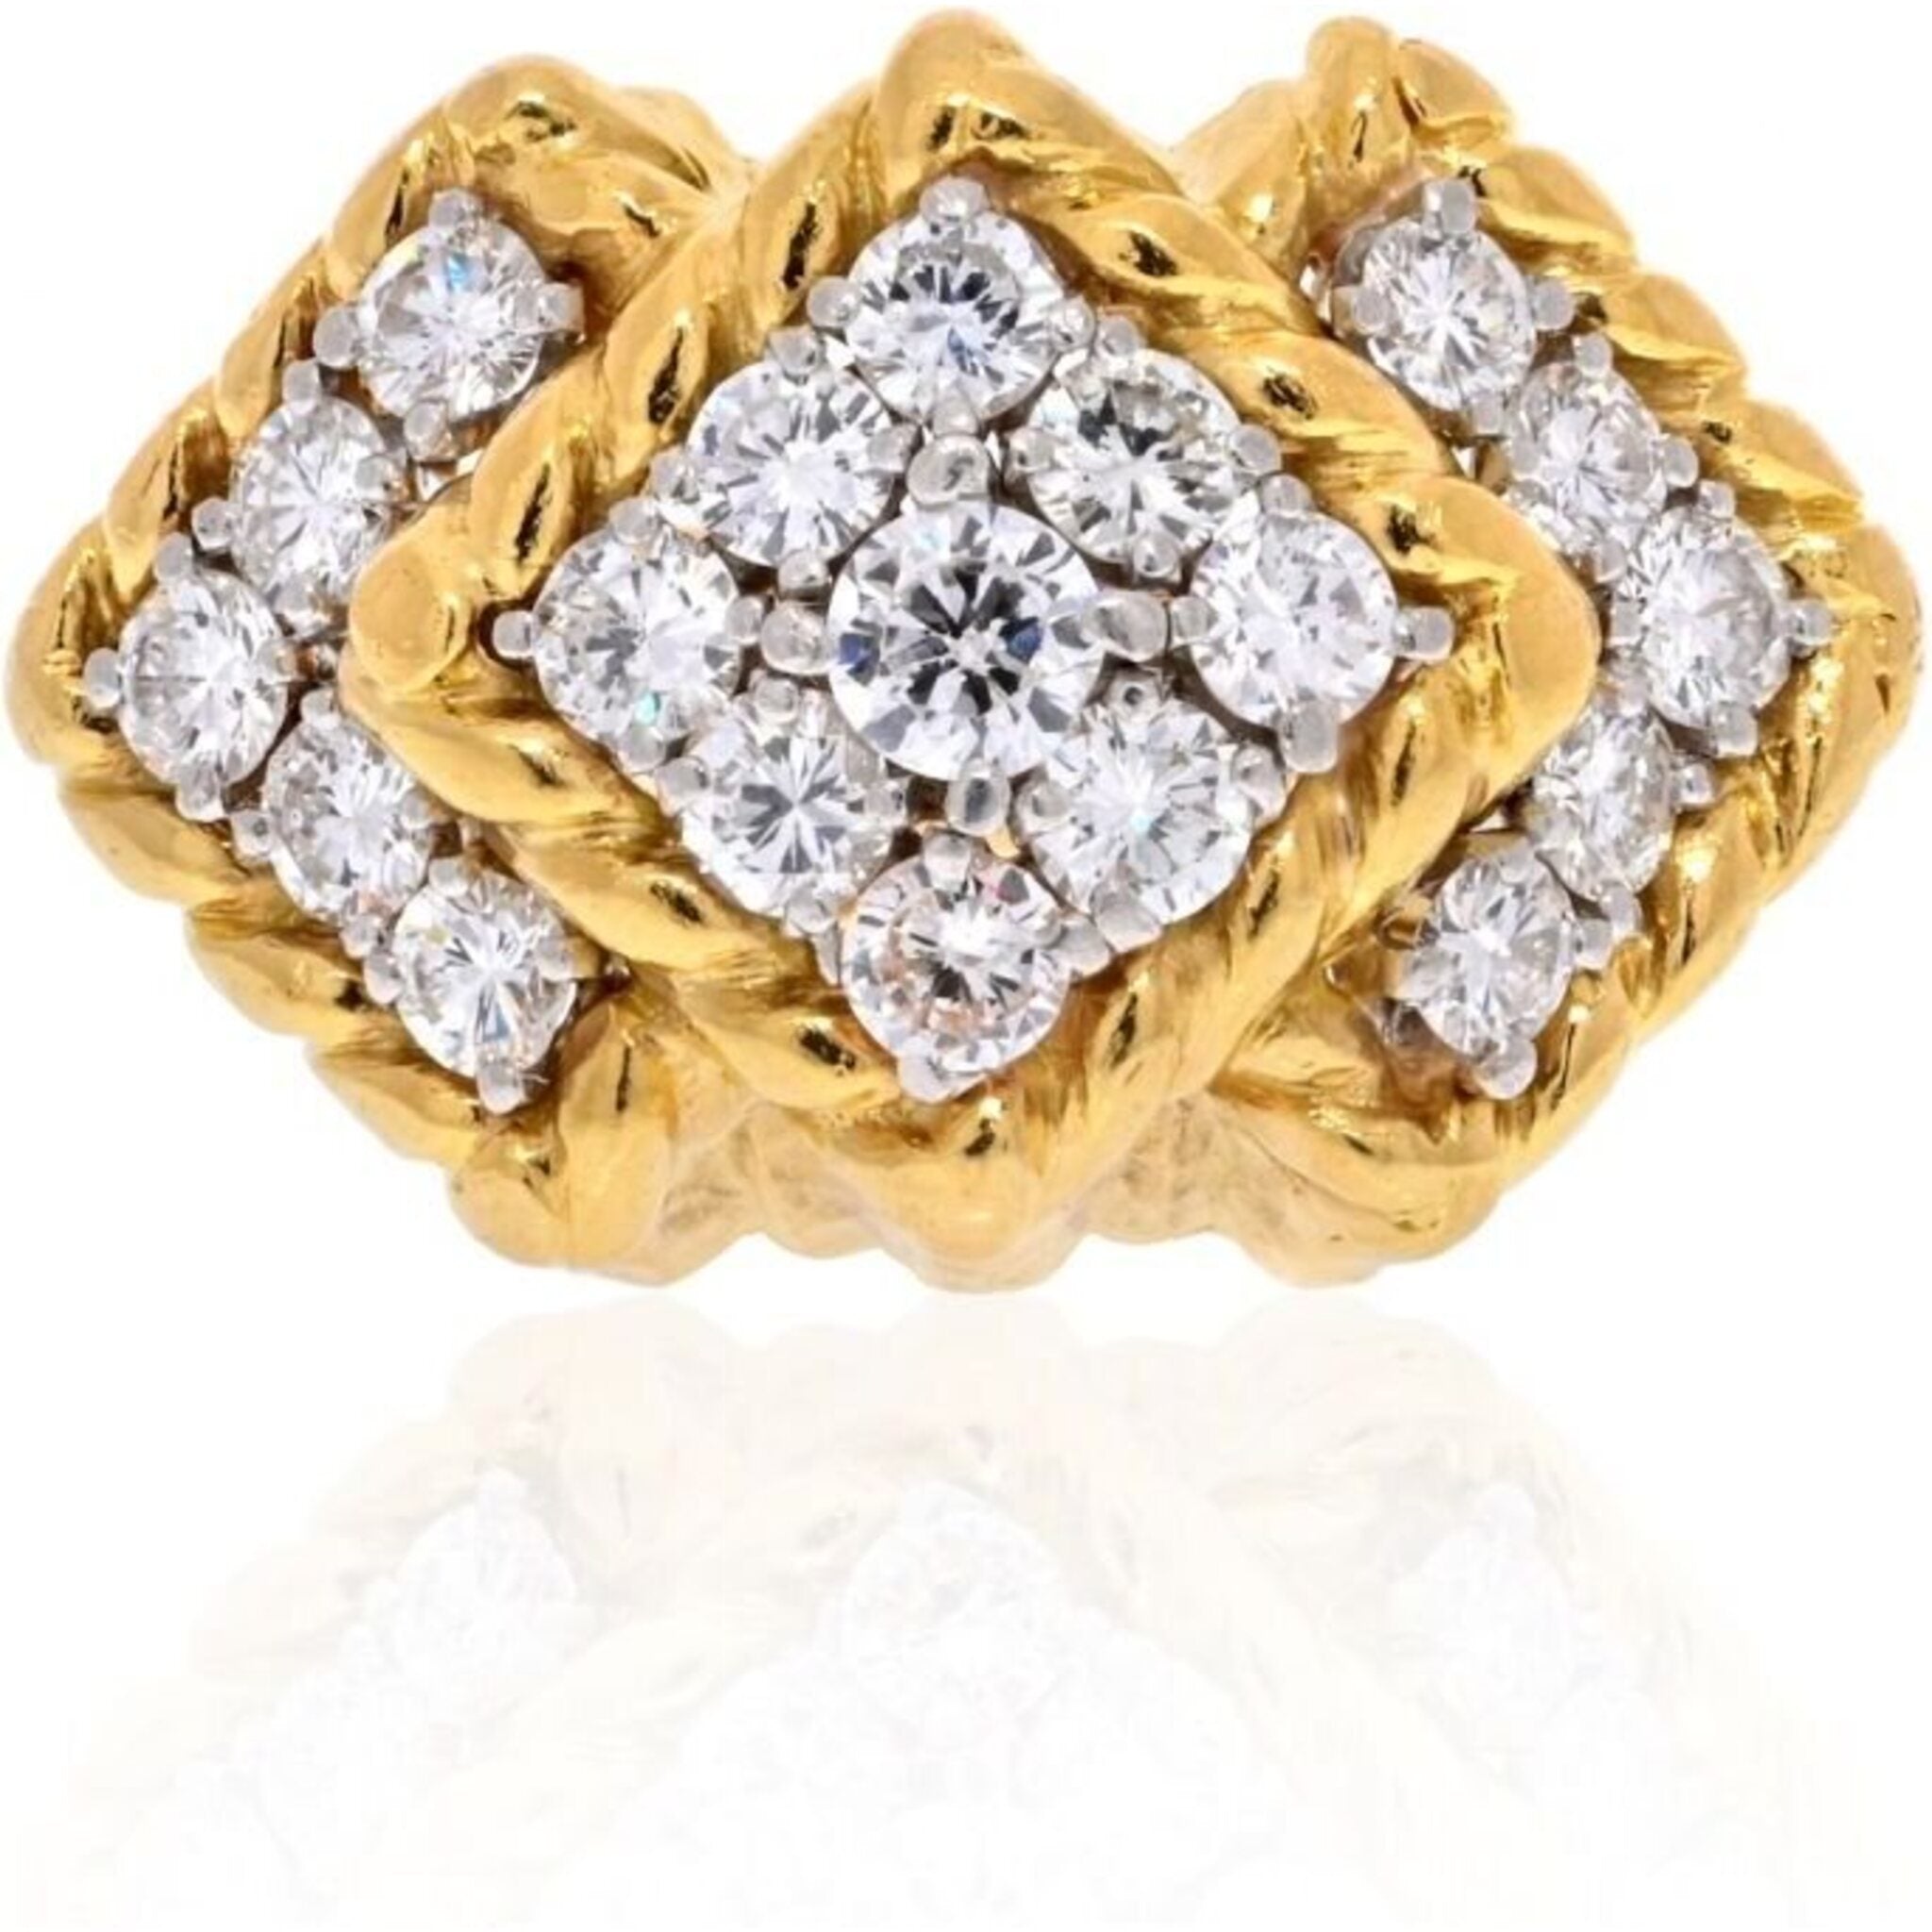 David Webb - 18K Yellow Gold 2.20 Carat Diamond Chevron Ring